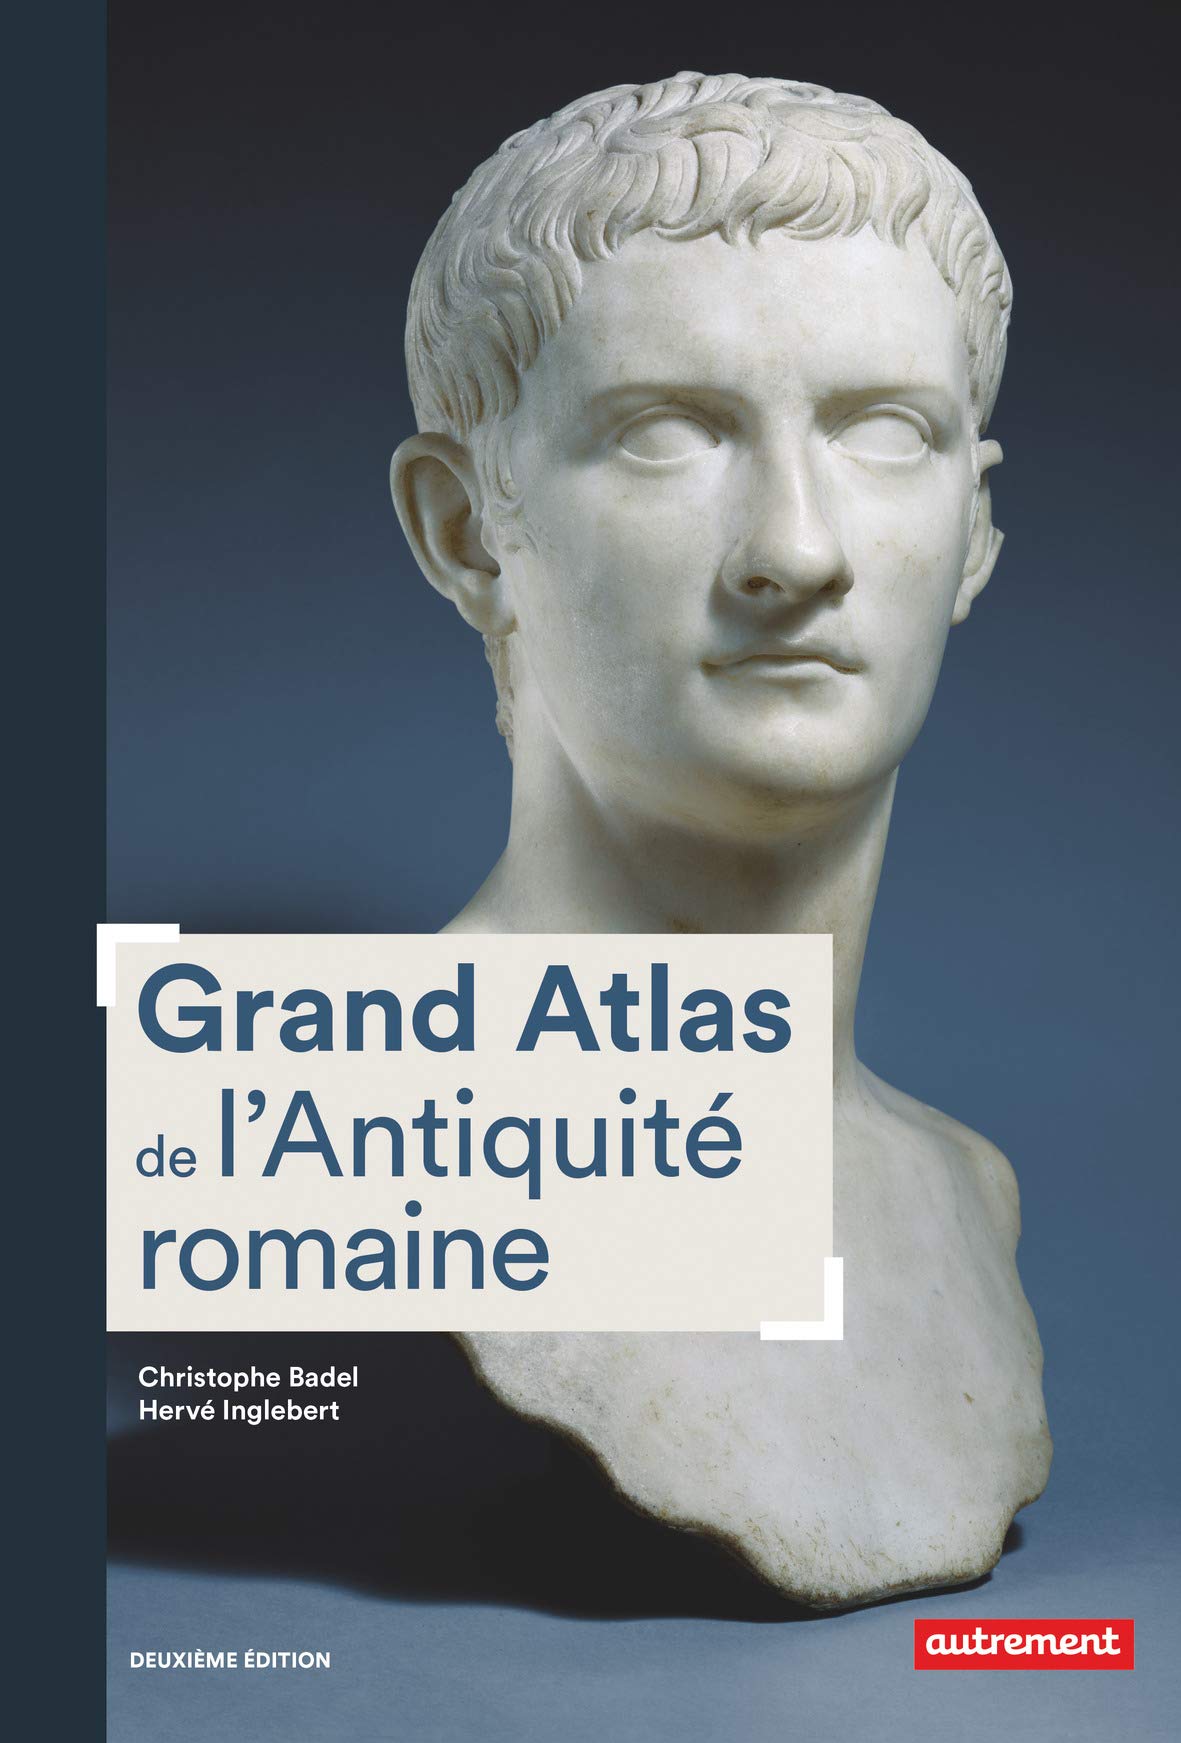 Grand Atlas de l'Antiquité romaine, IIIe siècle av. J.C.-VIe siècle apr. J.C. Construction, apogée et fin d'un empire, 2019, 192 p.